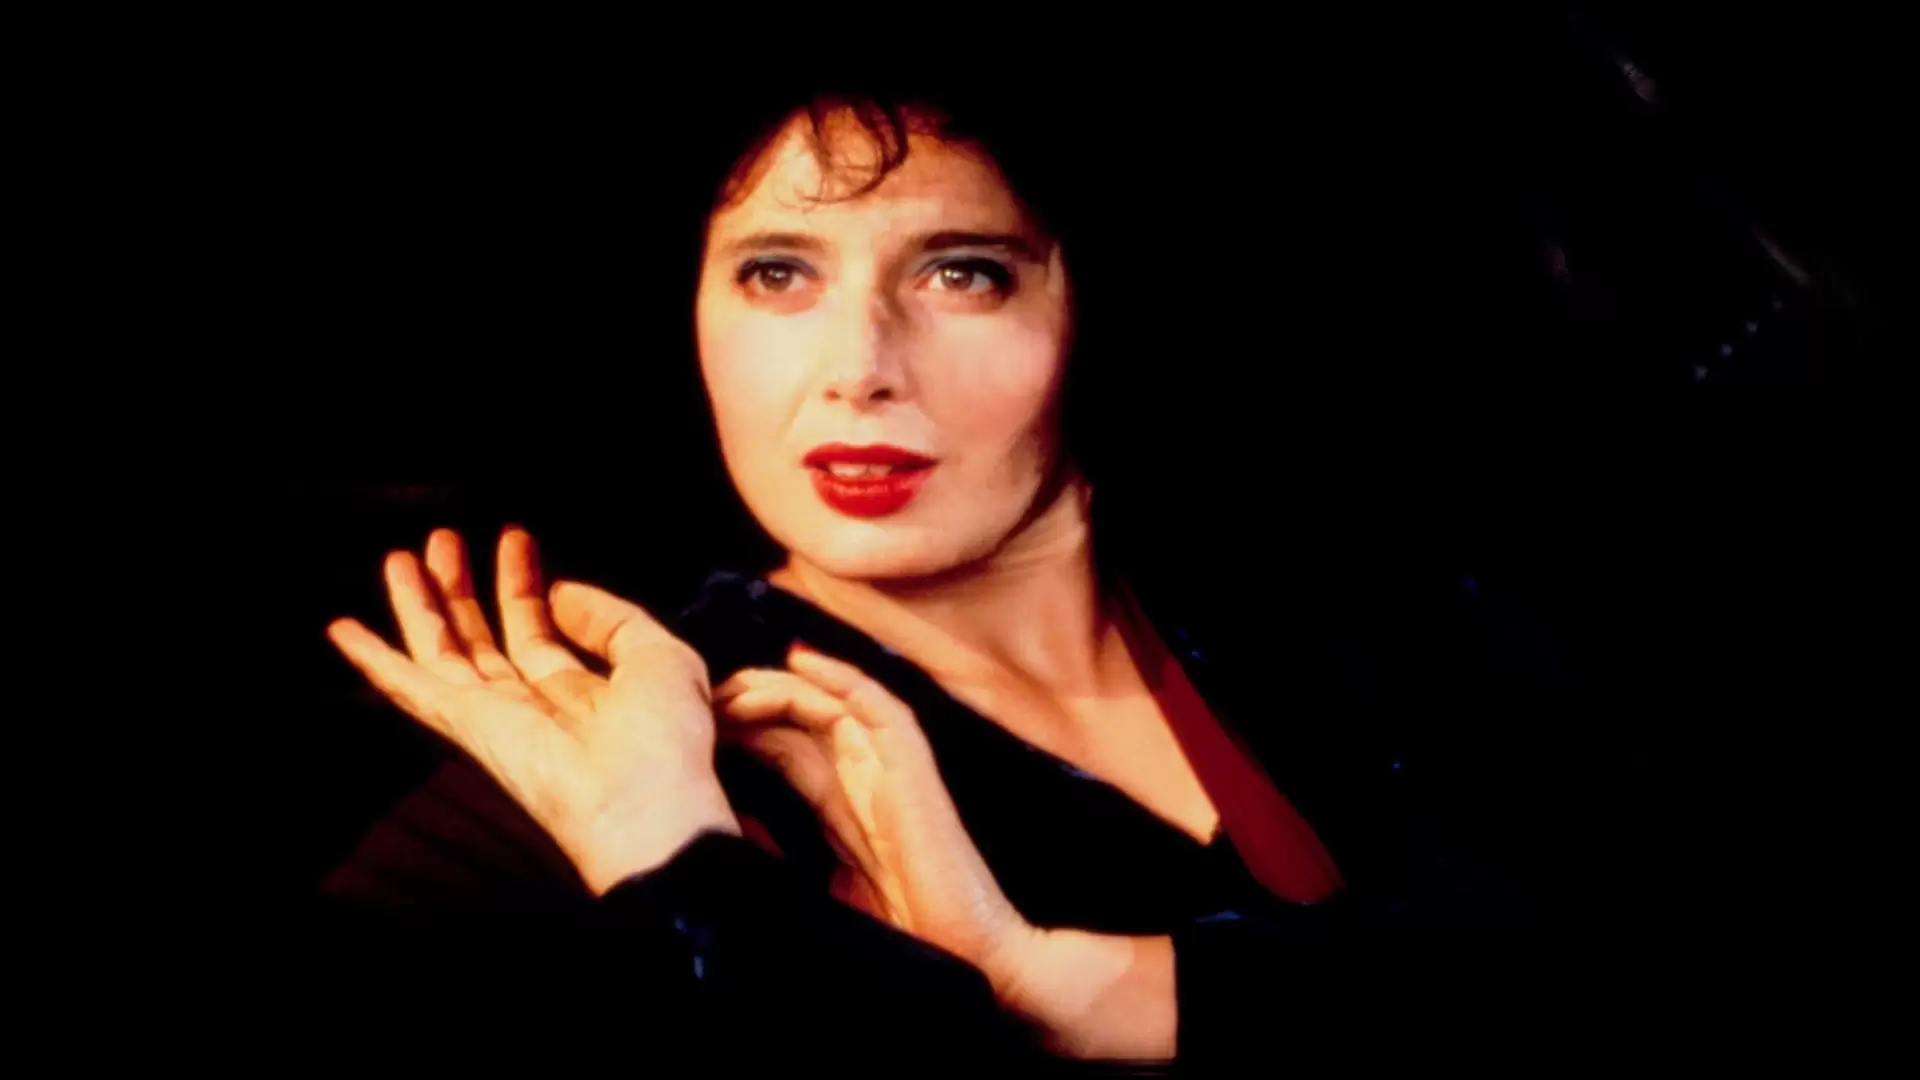 دانلود فیلم Blue Velvet 1986 (مخمل آبی) با زیرنویس فارسی و تماشای آنلاین